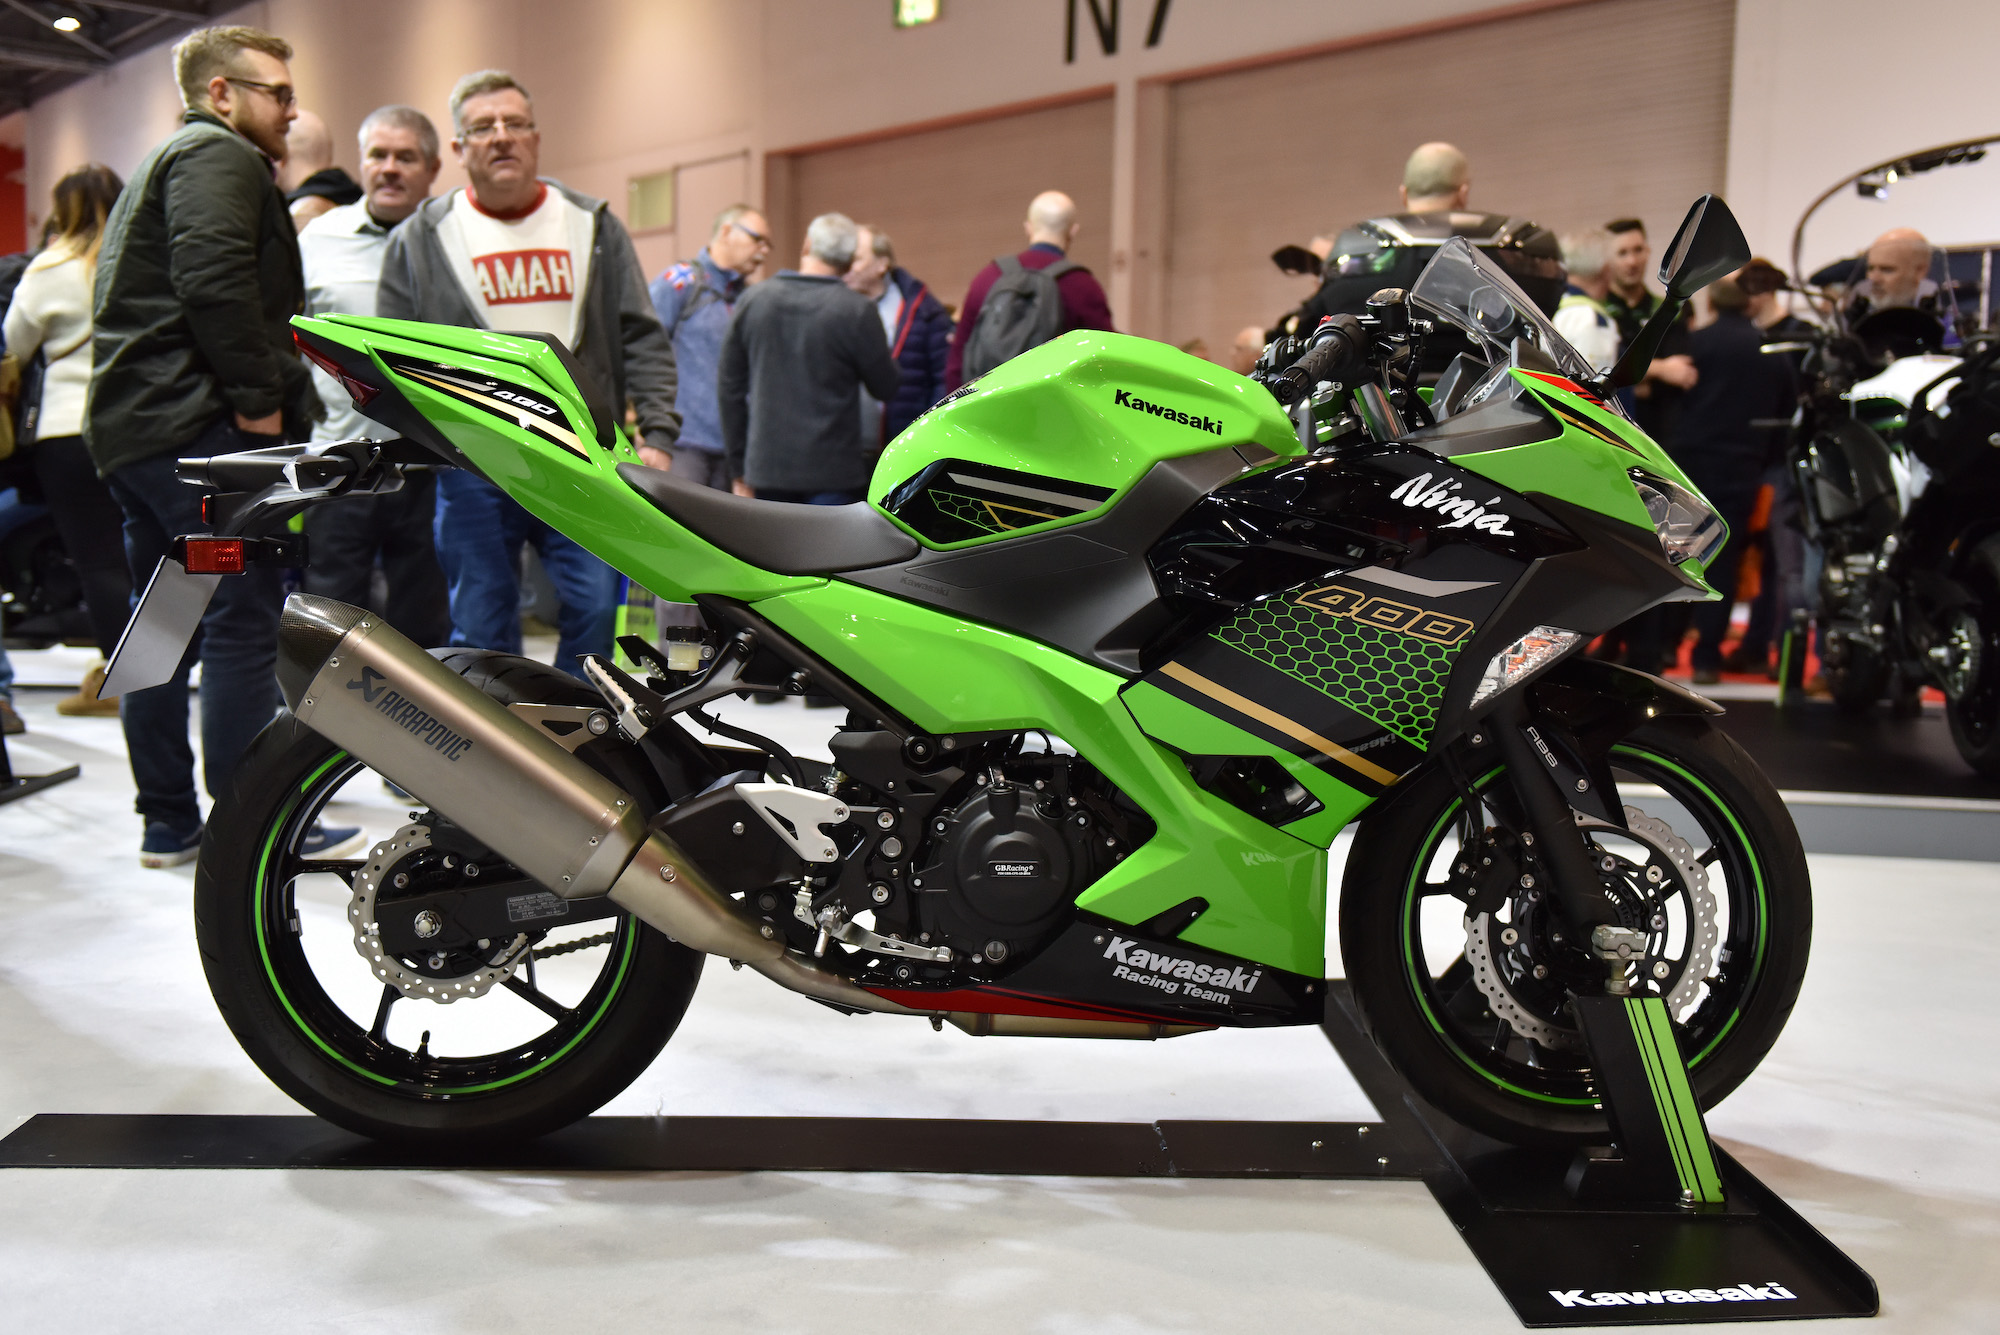 organiseren baai Probleem The Kawasaki Ninja 400 Was Voted the Best Motorcycle for Beginners